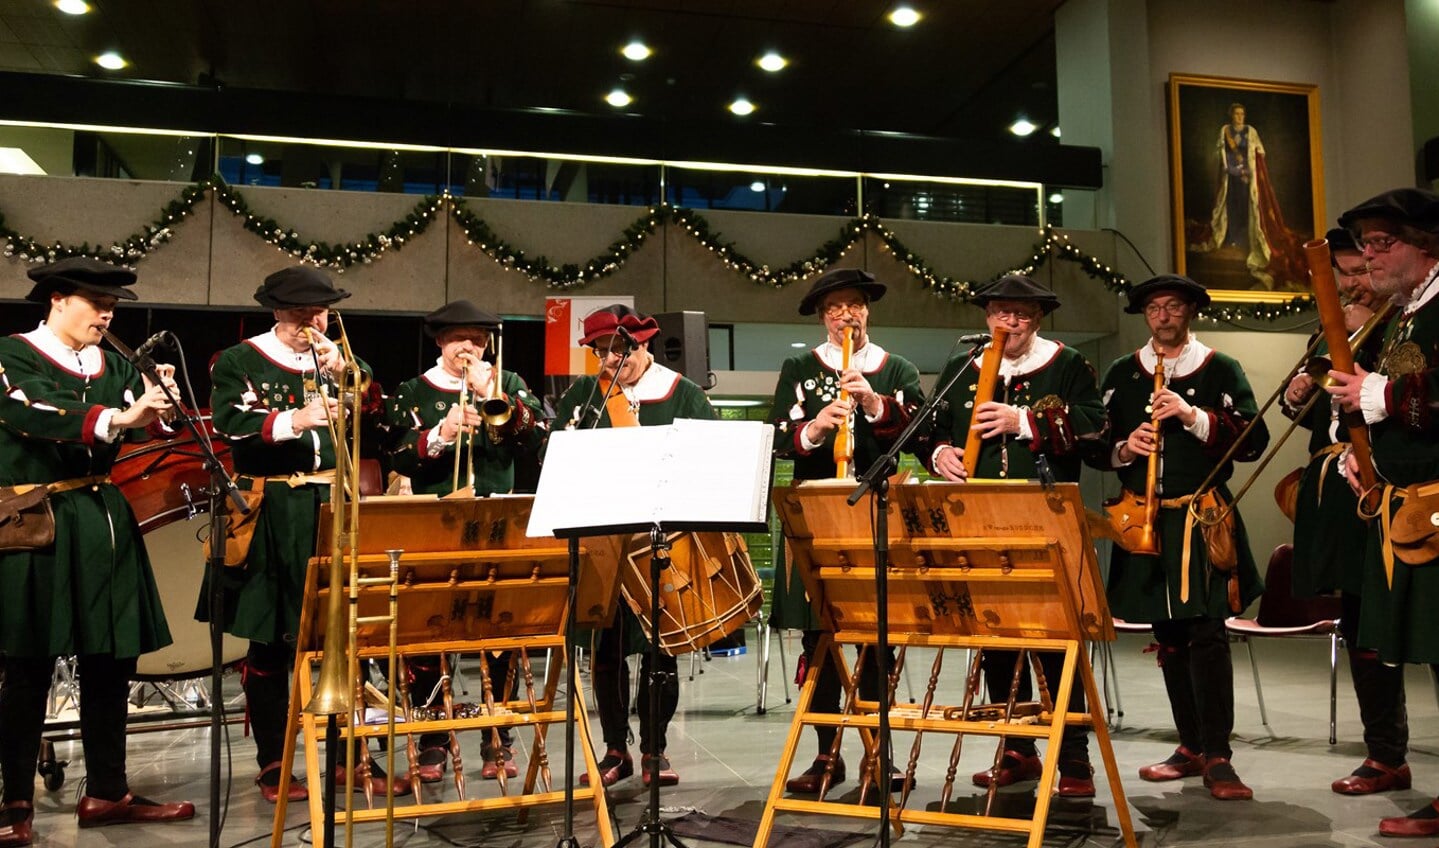 Stadspijpers van 's-Hertogenbosch is het enige stadspijpers ensemble in Nederland. 